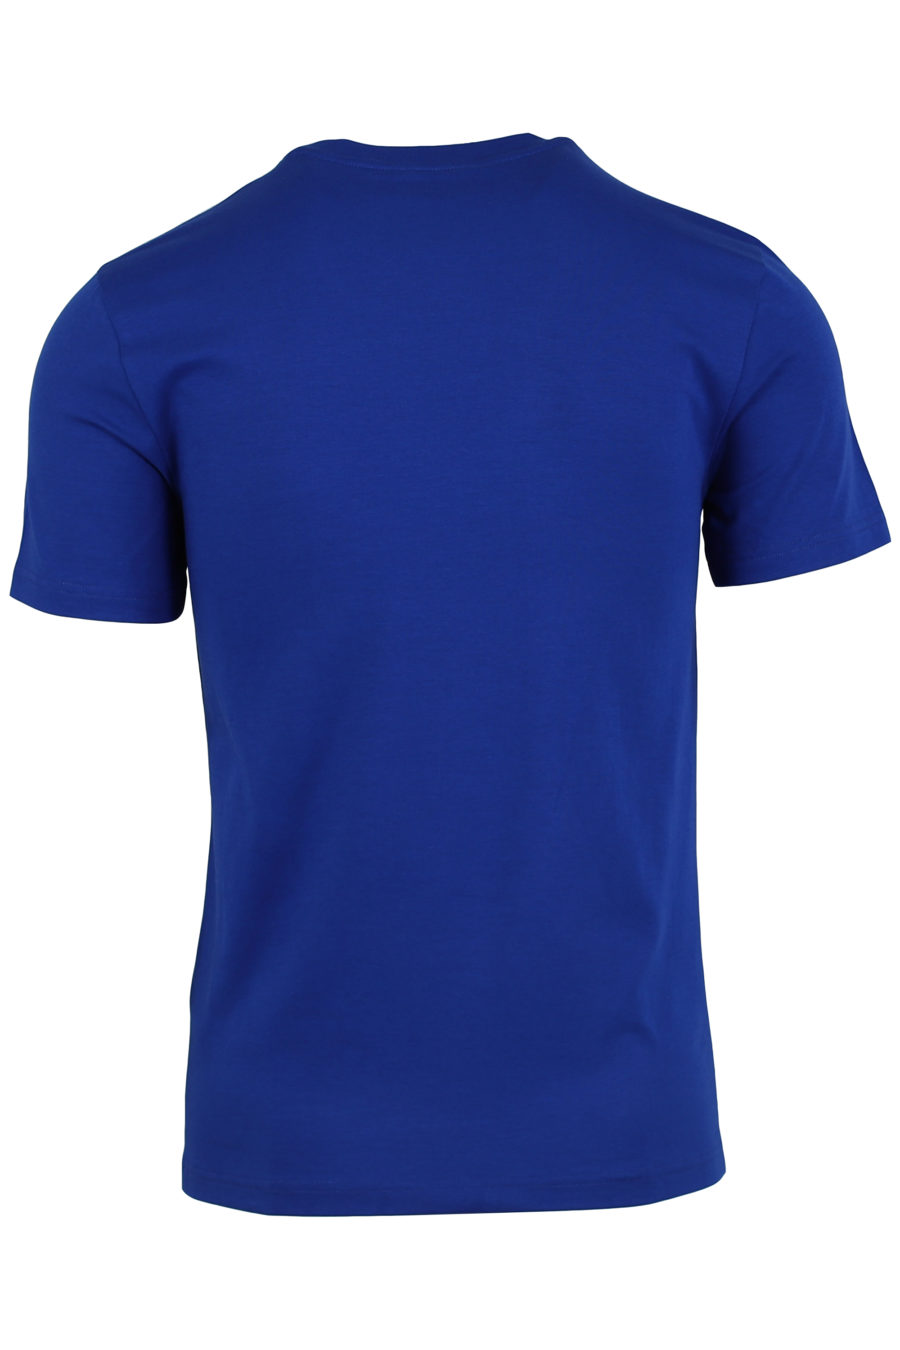 Camiseta azul logo en color oro - IMG 0920